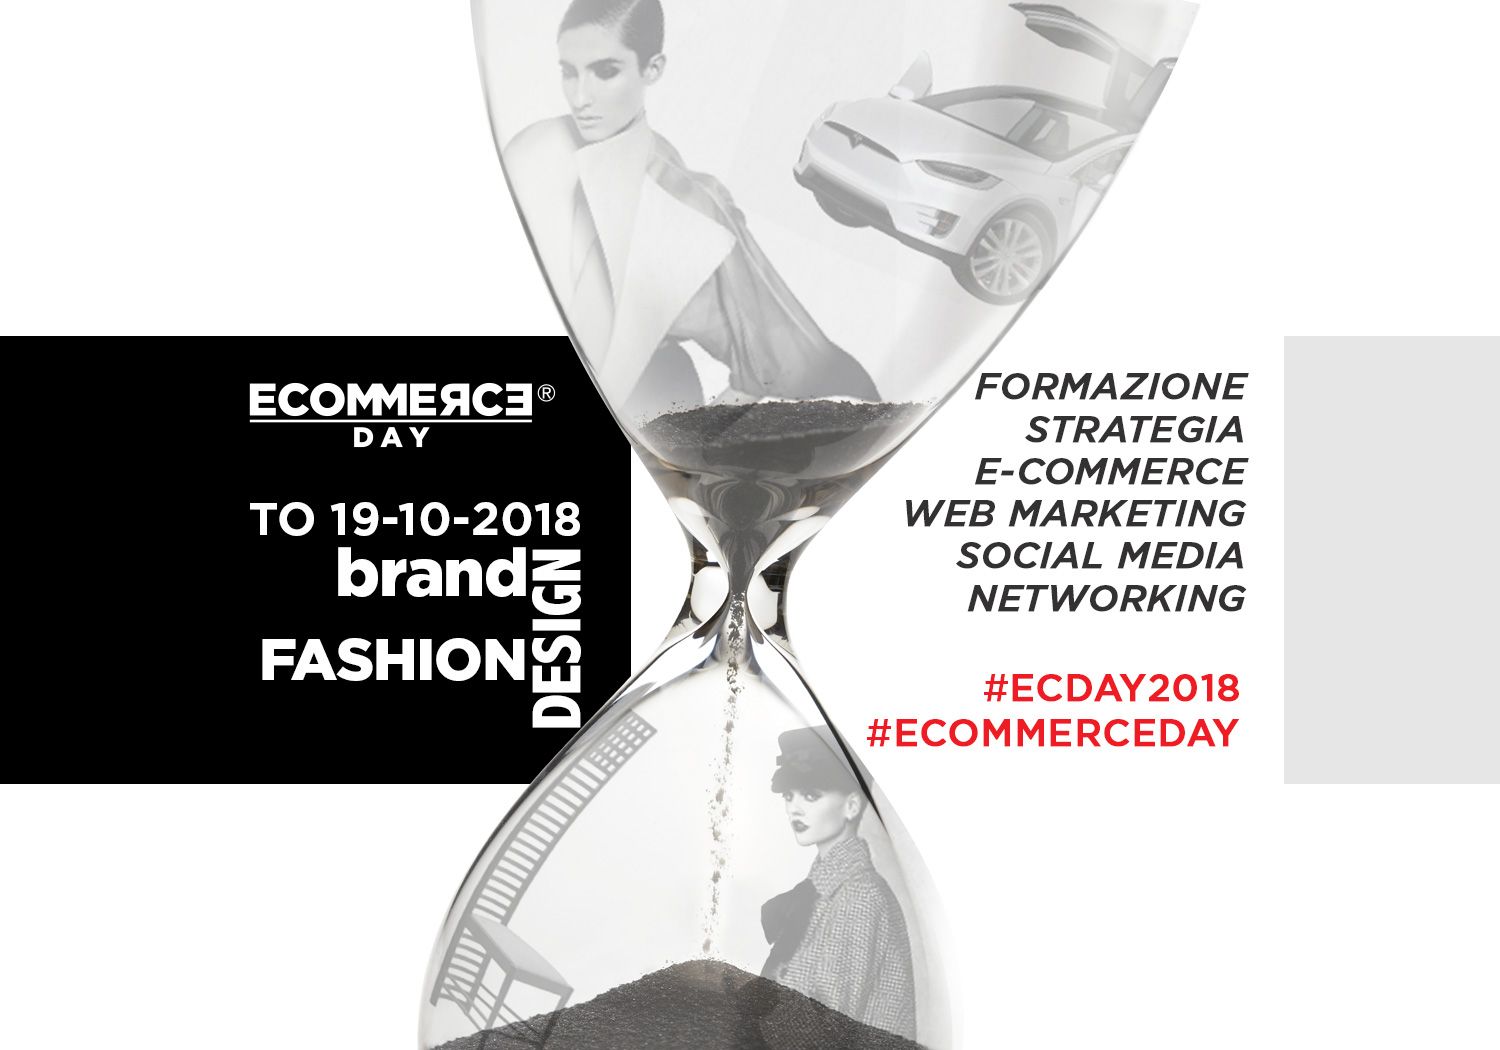 Ecommerce Day 2018: formazione ecommerce e digital transformation